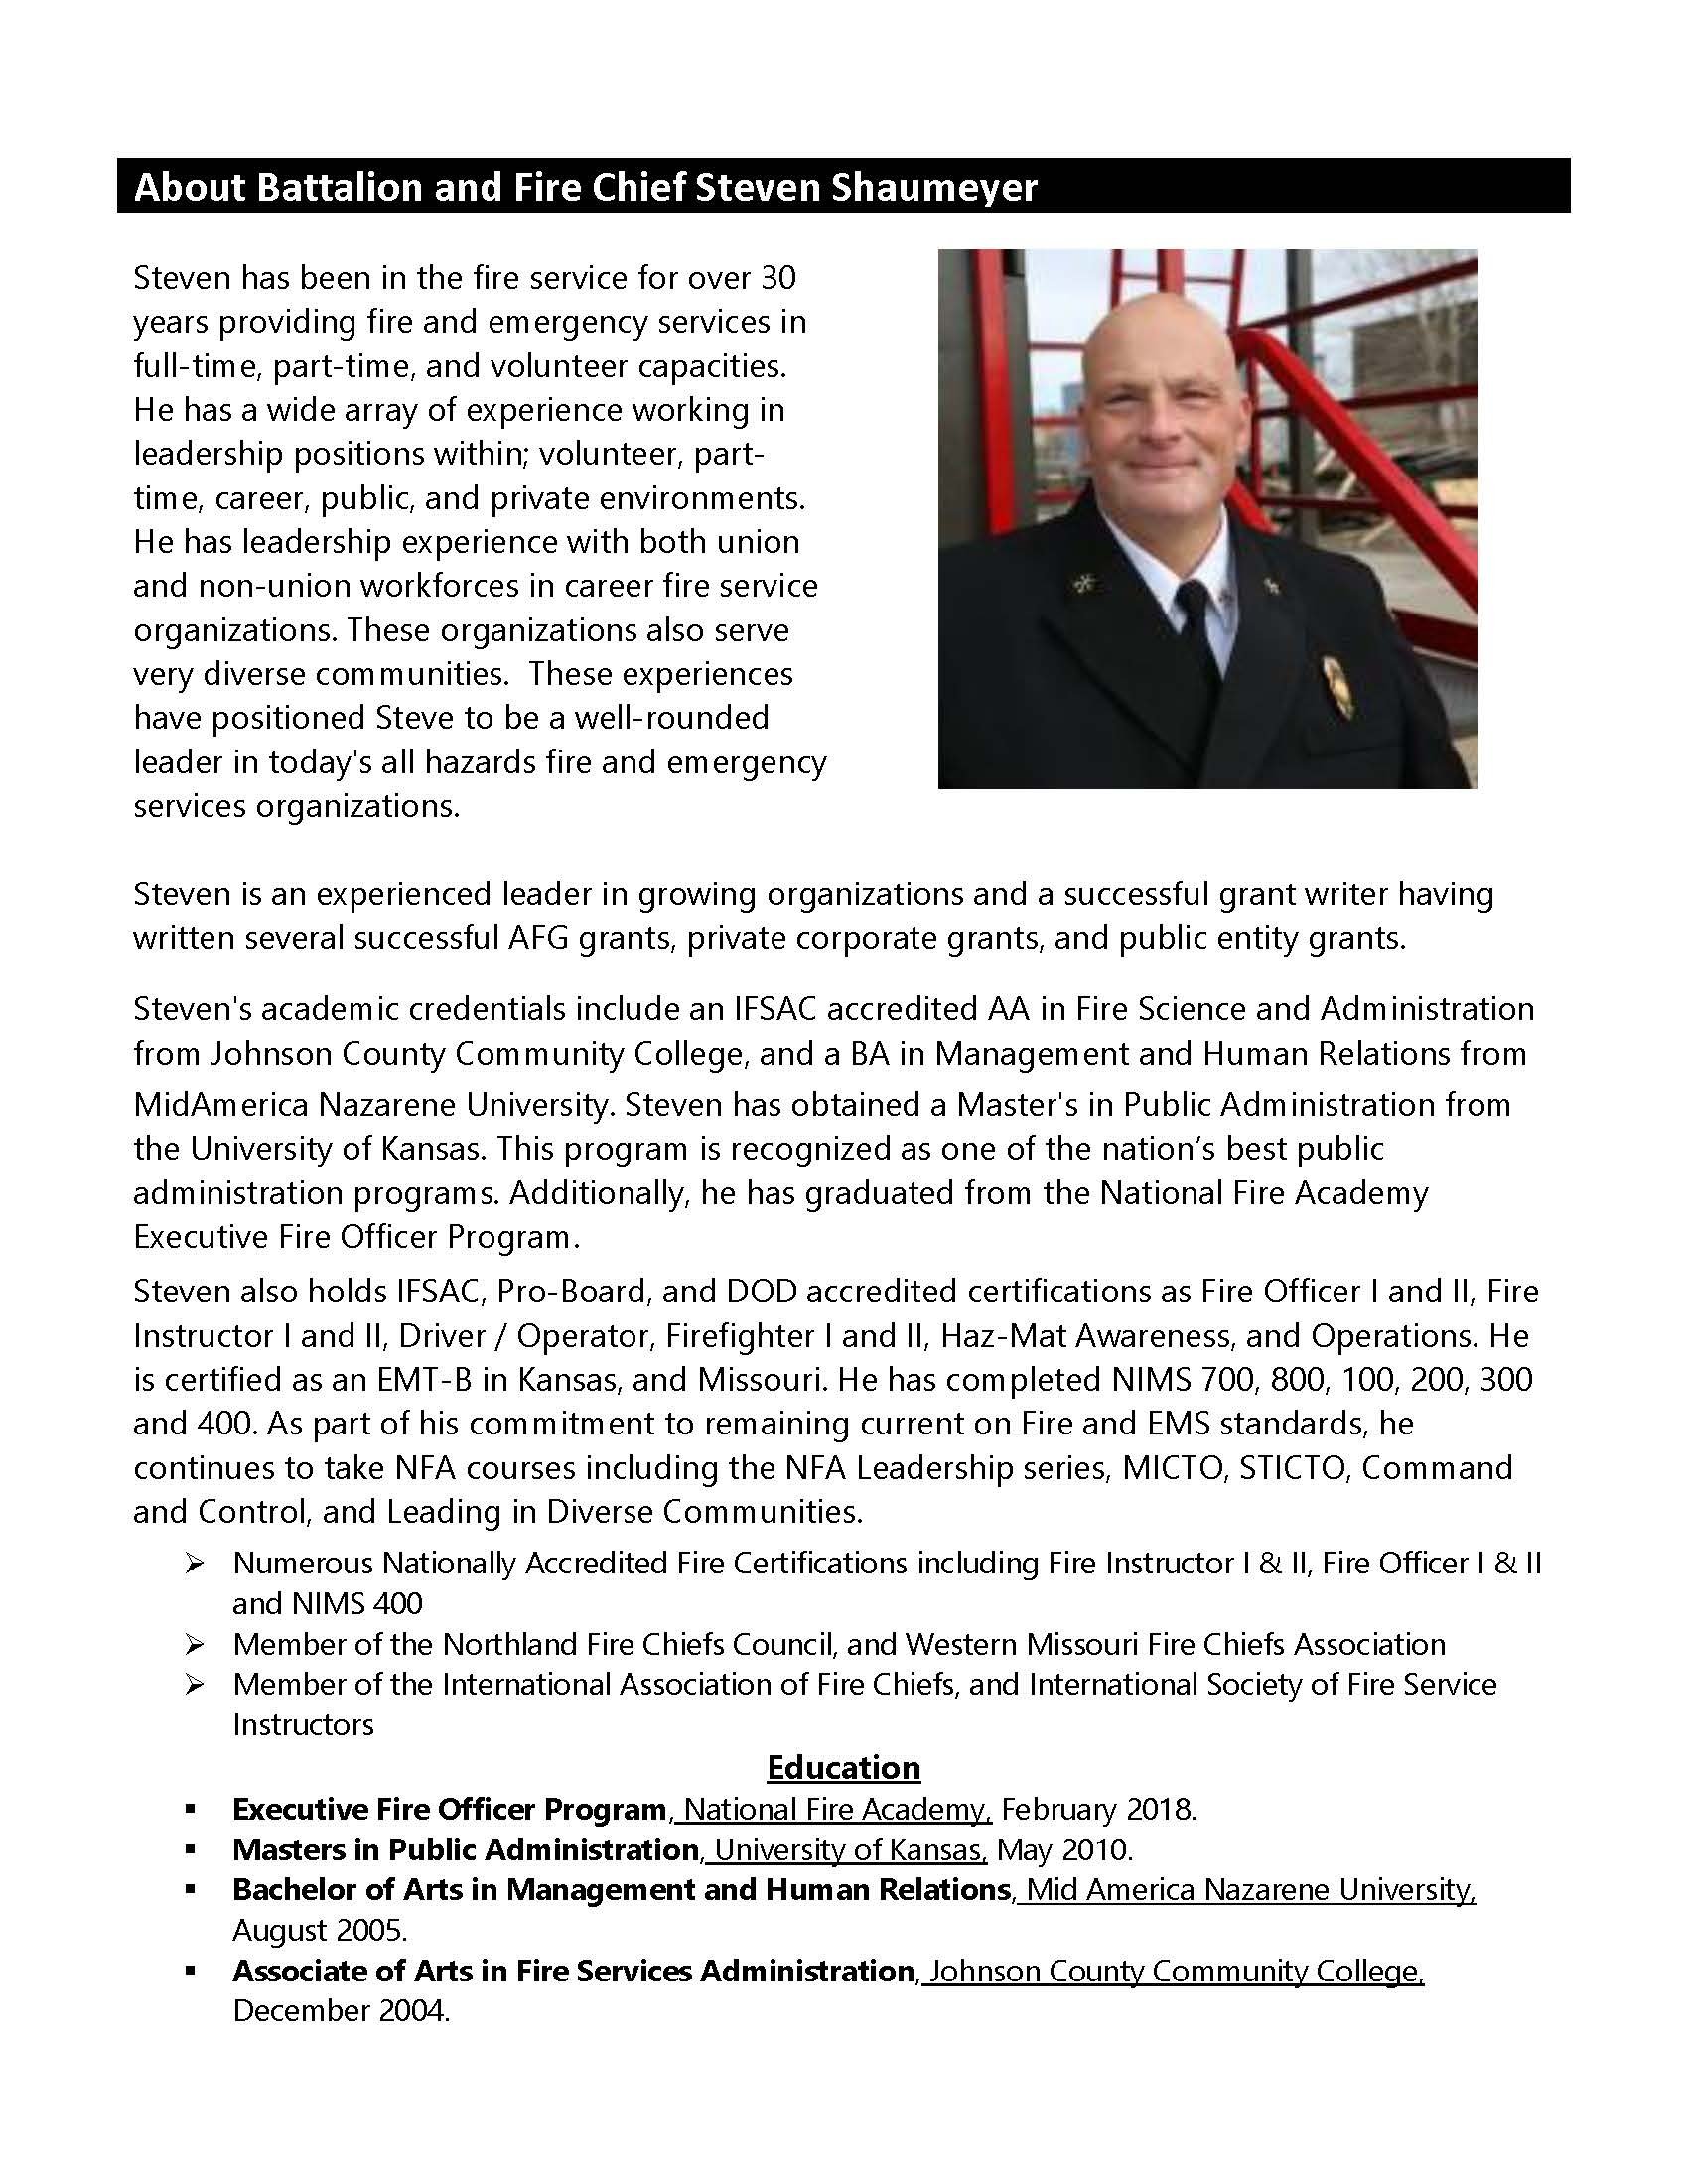 Fire/ EMS Expert - Fire Chief Steven Shaumeyer Report